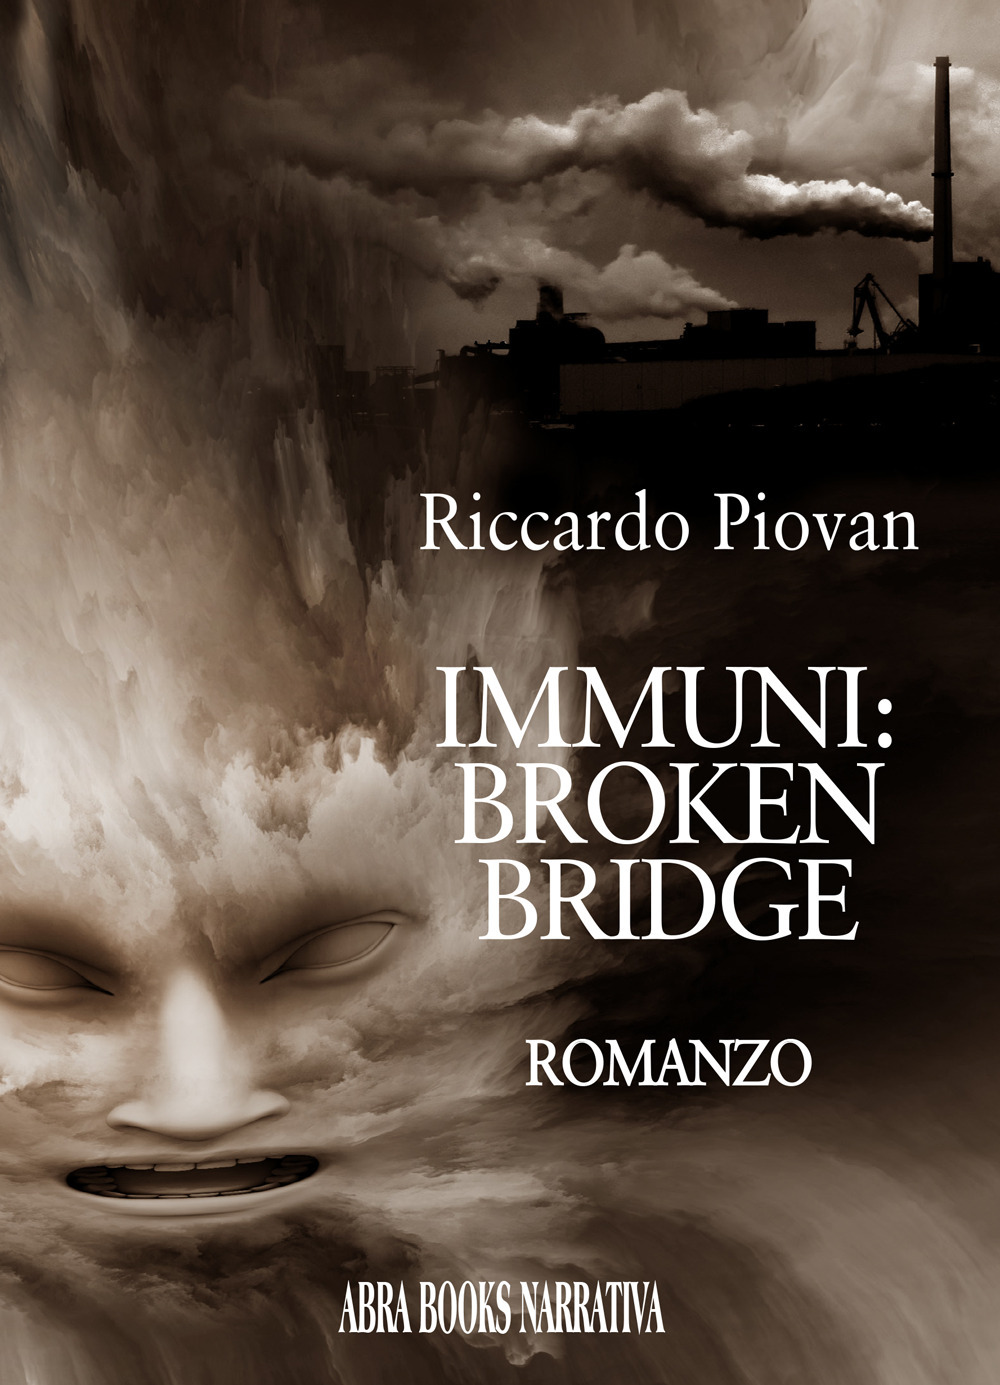 Immuni: broken bridge